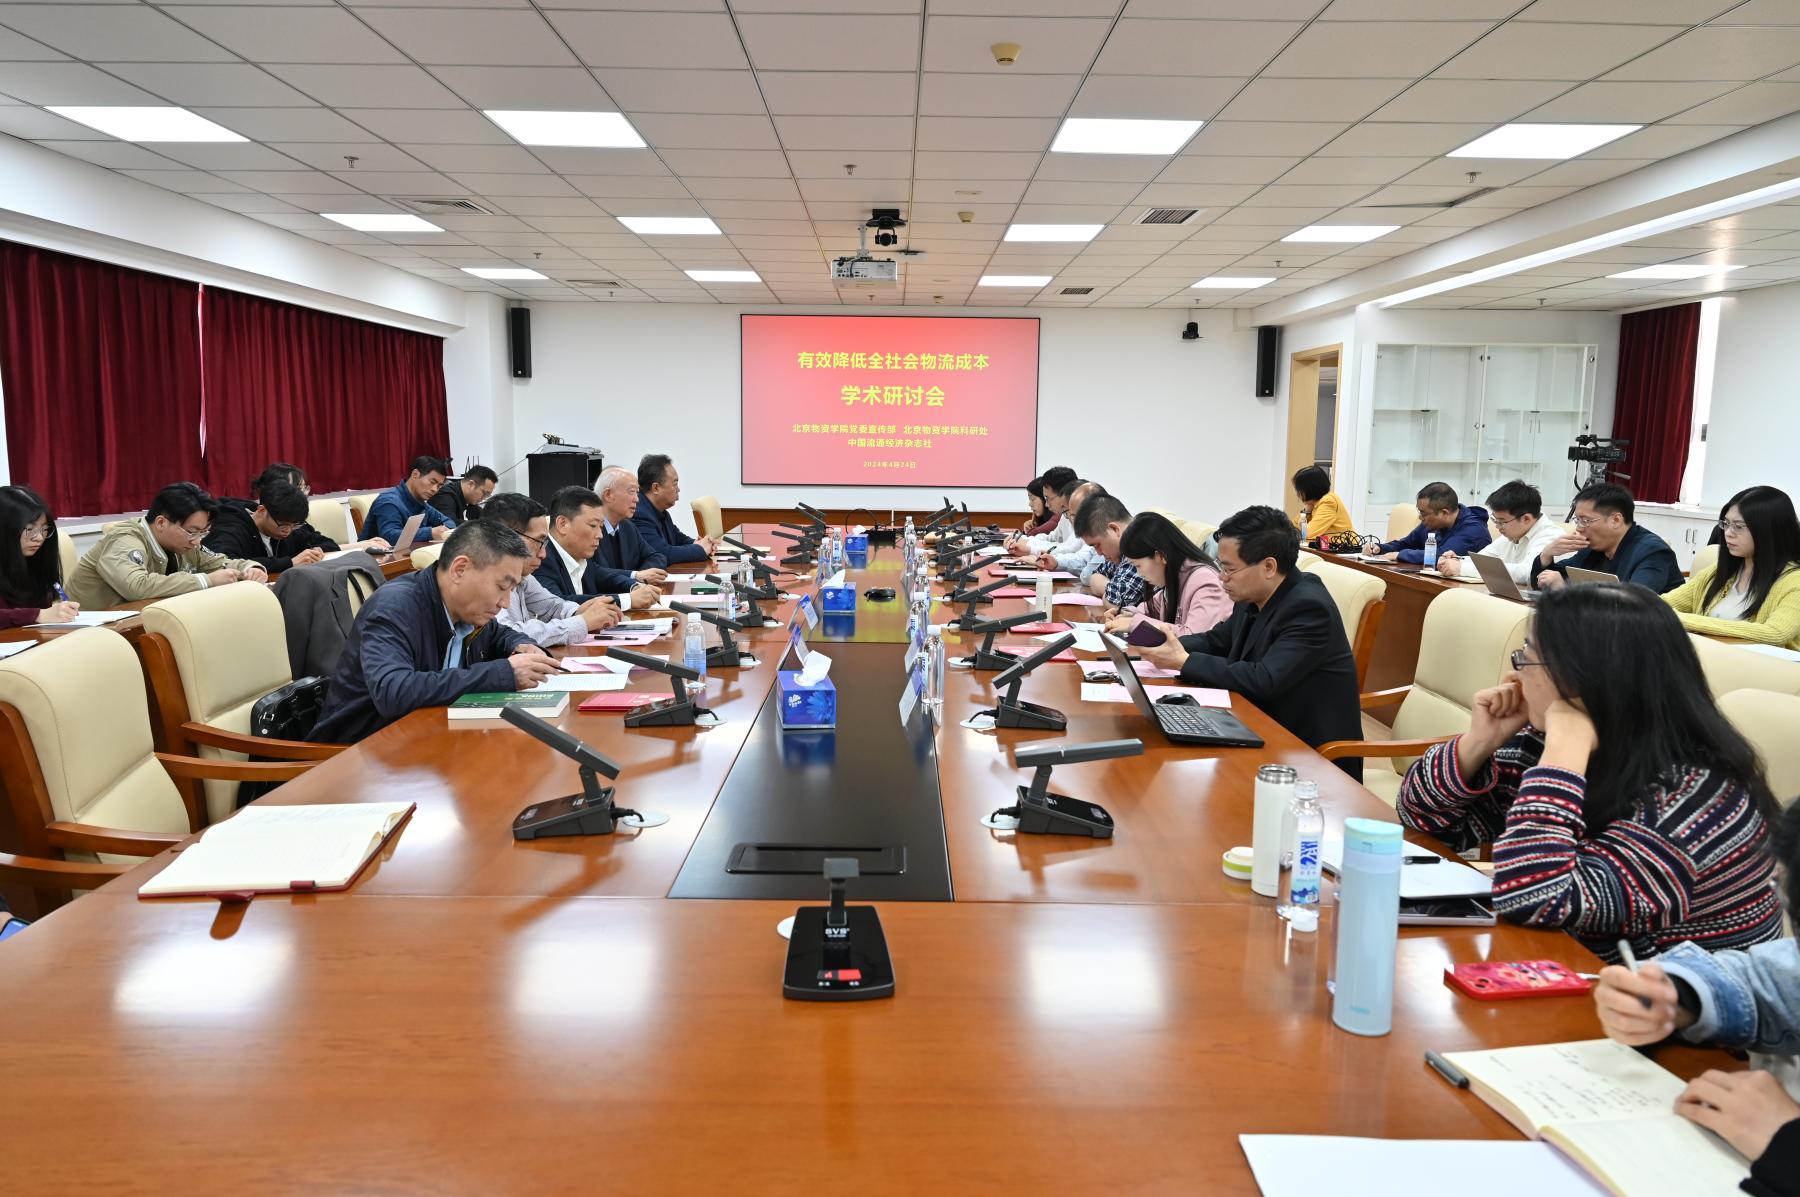 北京物资学院成功举办“有效降低全社会物流成本”学术研讨会